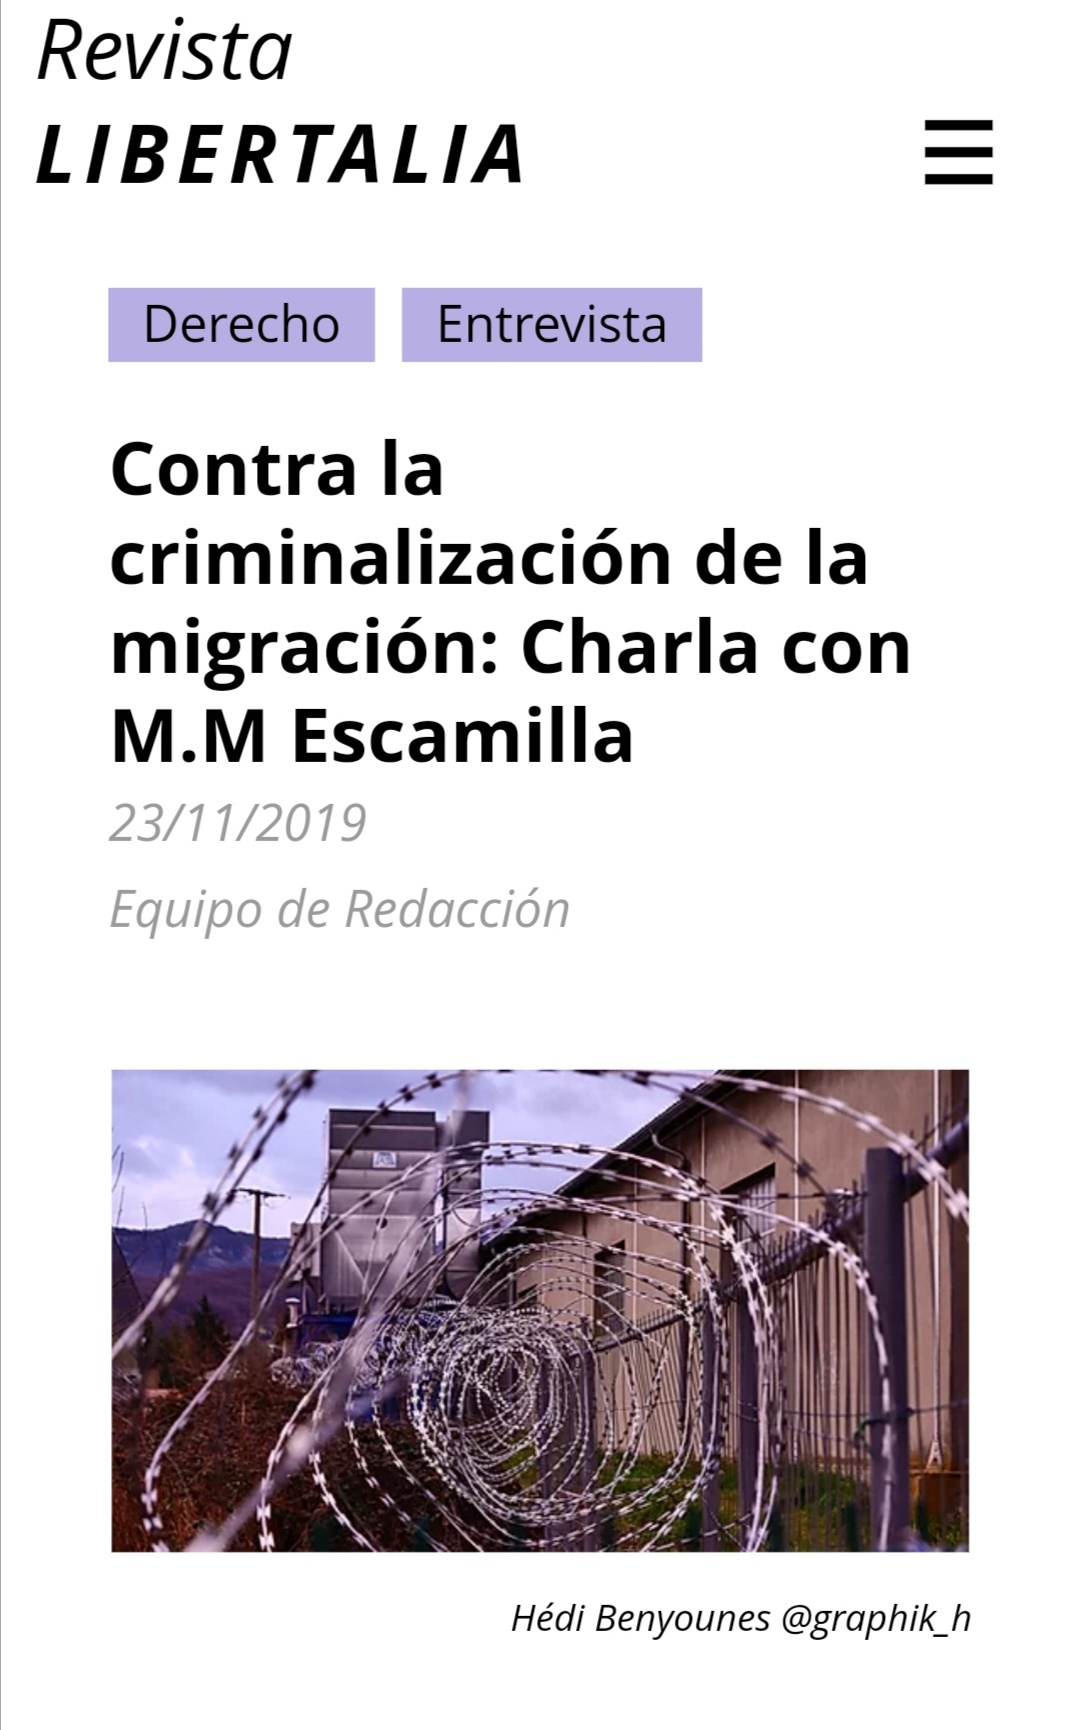 "Contra la criminalización de la migración". Charla con Margarita Martínez Escamilla